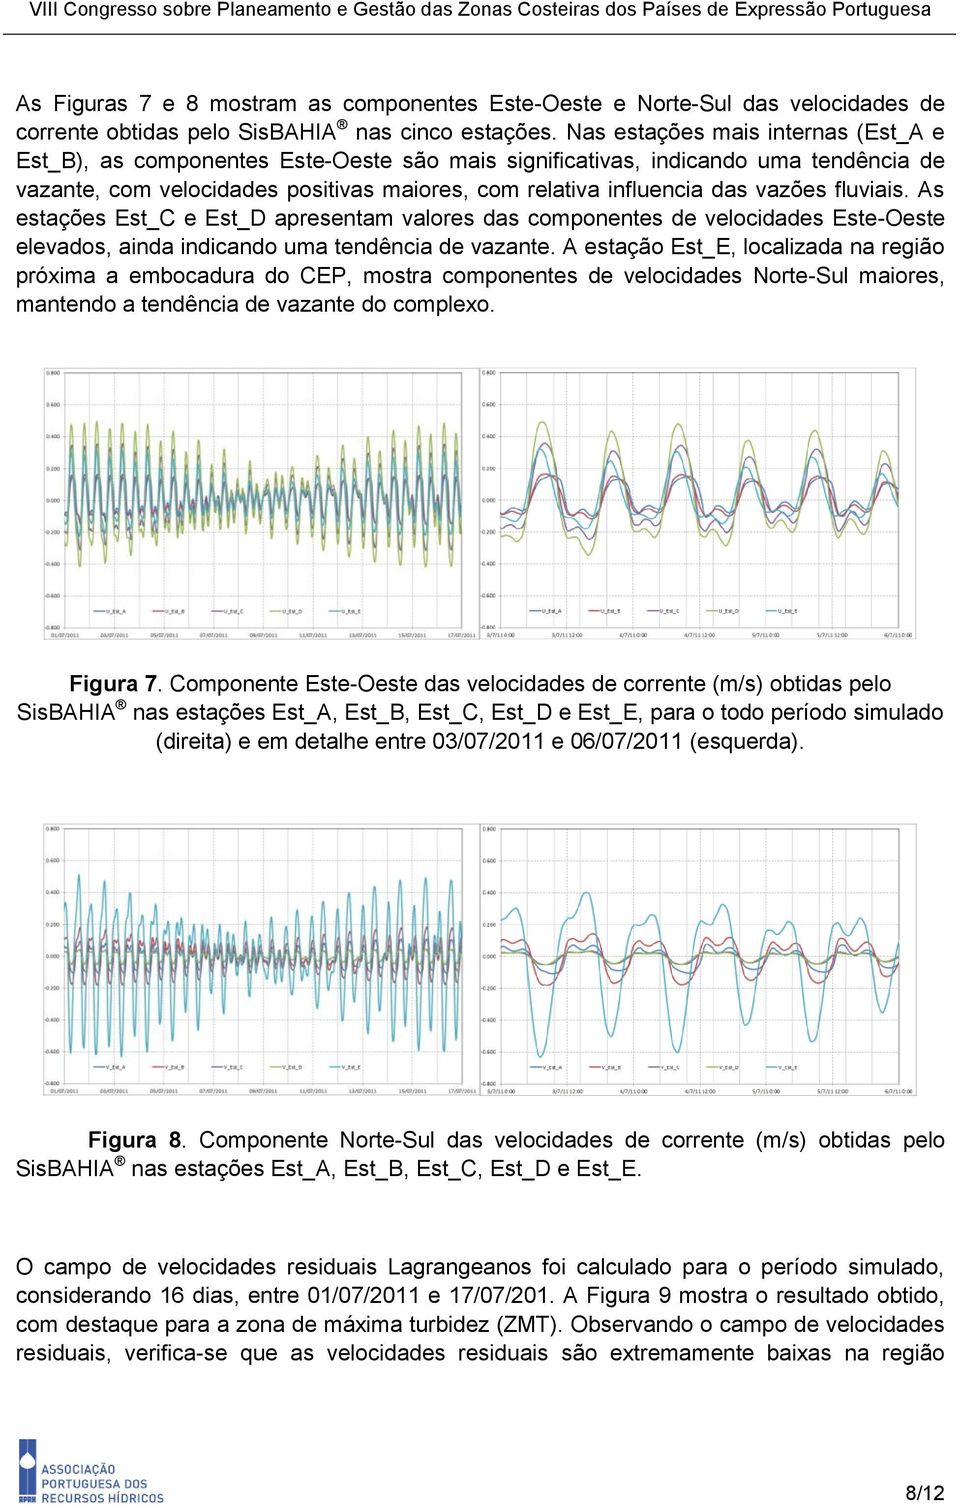 vazões fluviais. As estações Est_C e Est_D apresentam valores das componentes de velocidades Este-Oeste elevados, ainda indicando uma tendência de vazante.